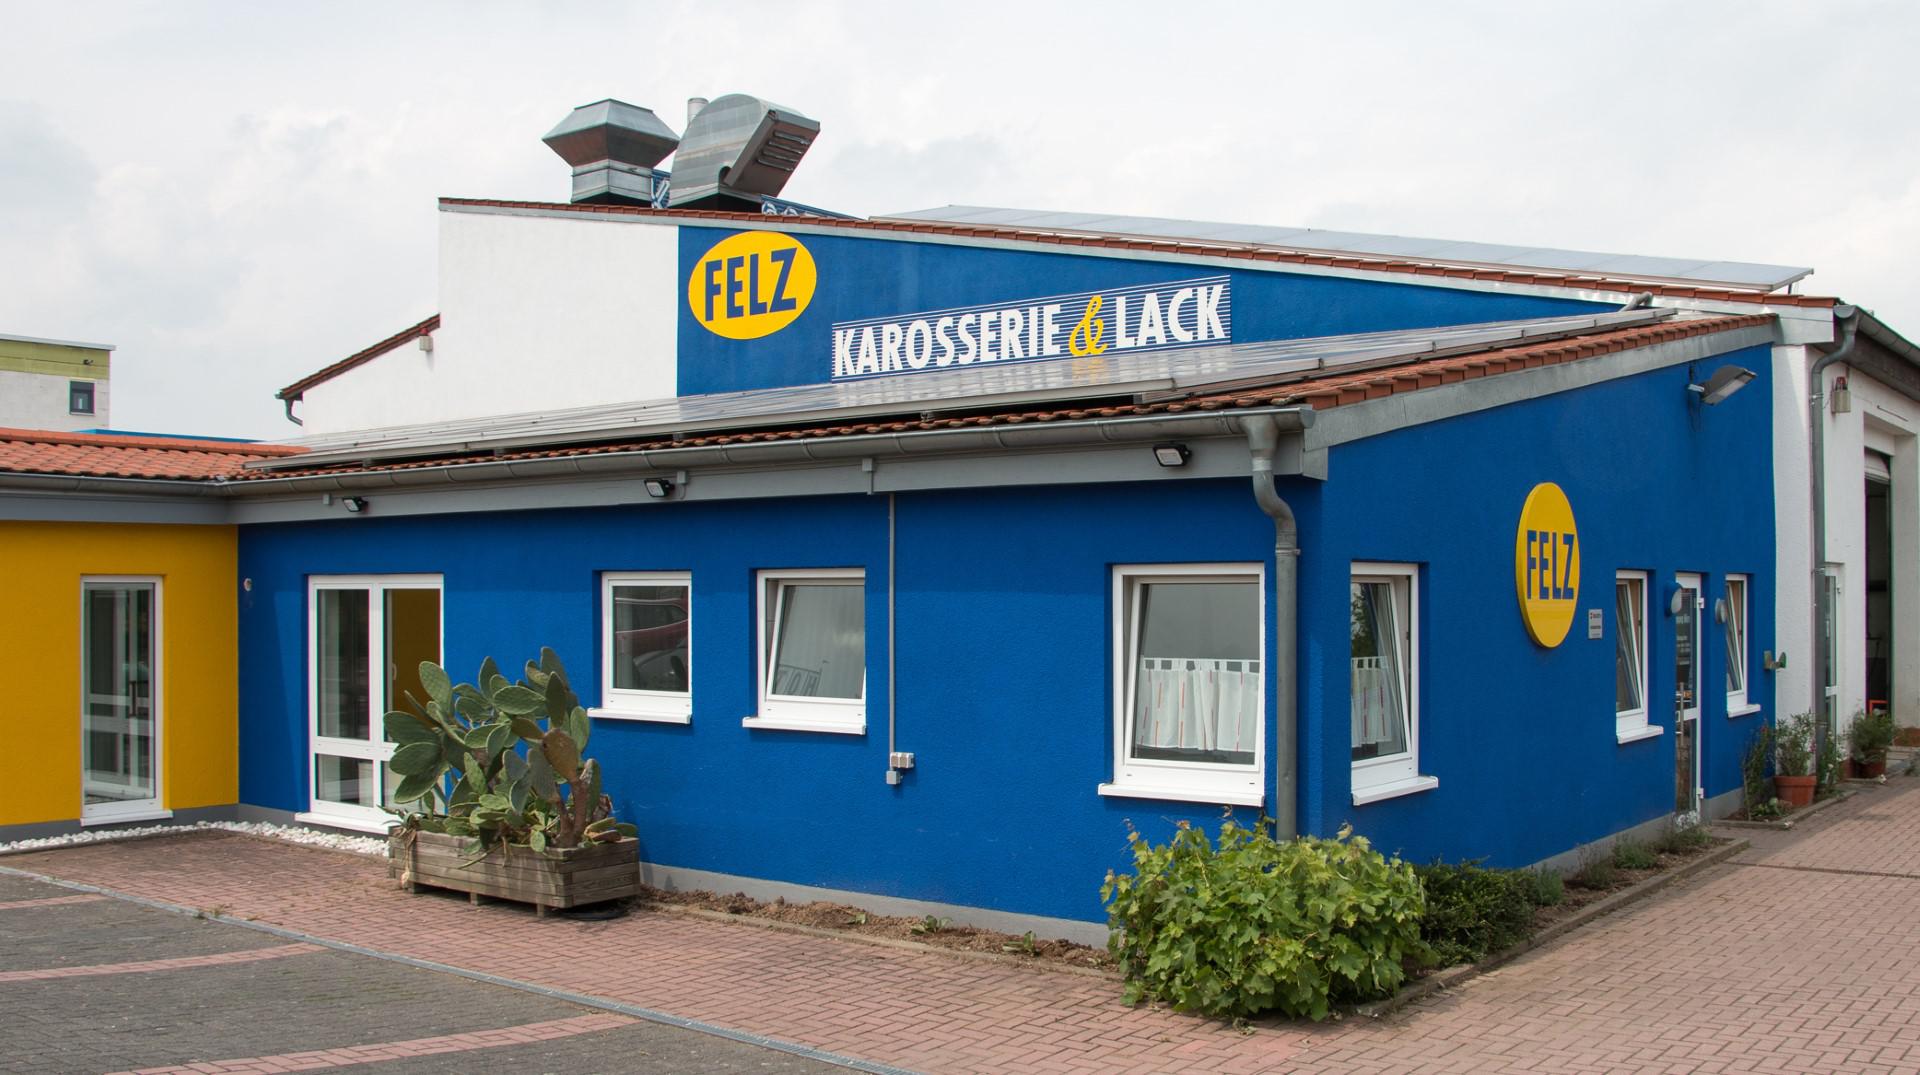 Felz Karosserie & Lack, Keppentaler Weg 13 in Wörrstadt